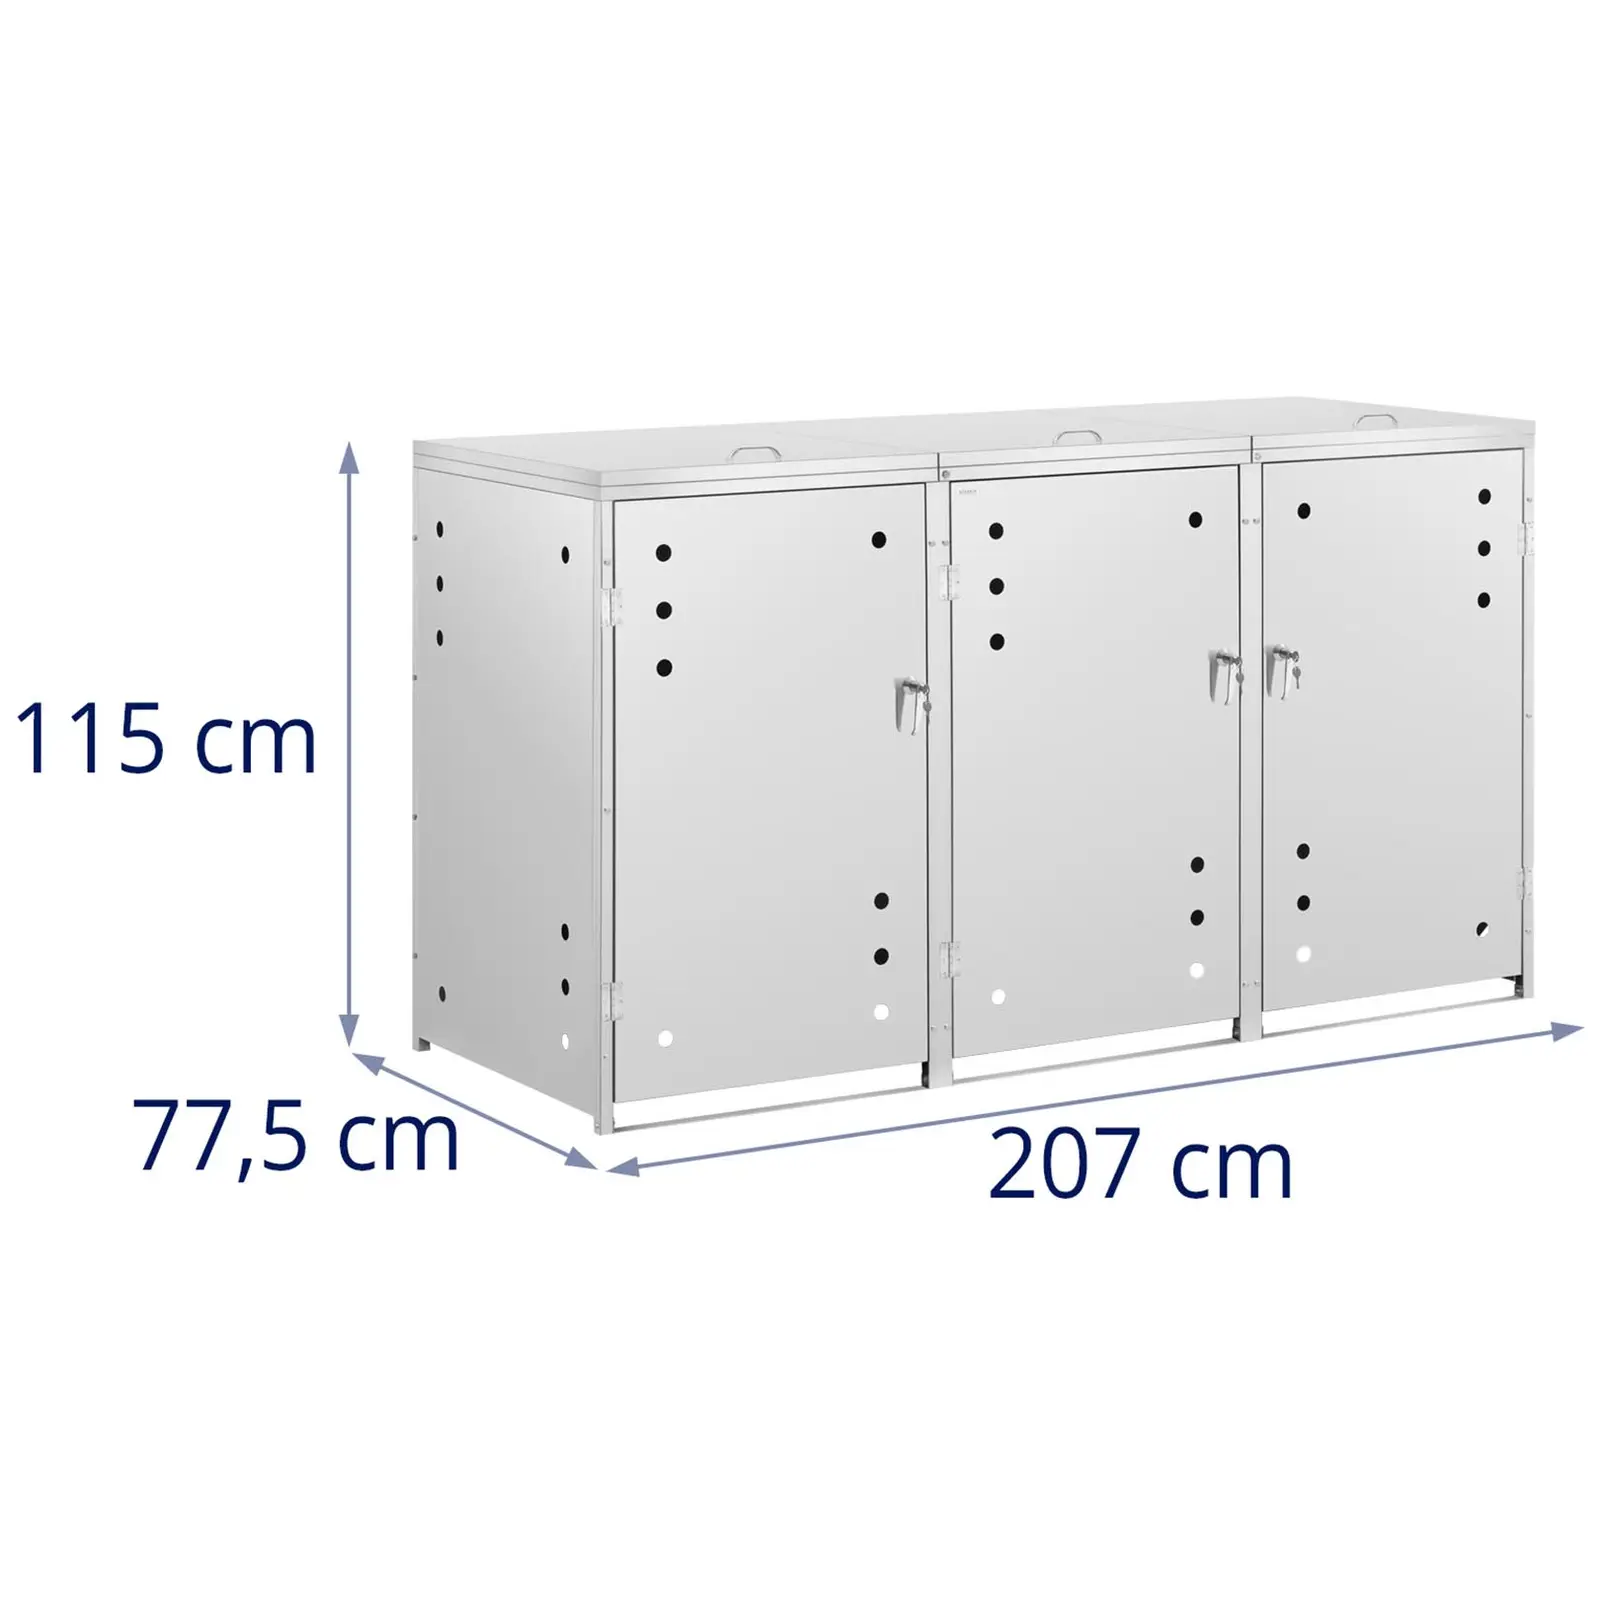 Bin Storage Box - 3 x 240 L - air holes